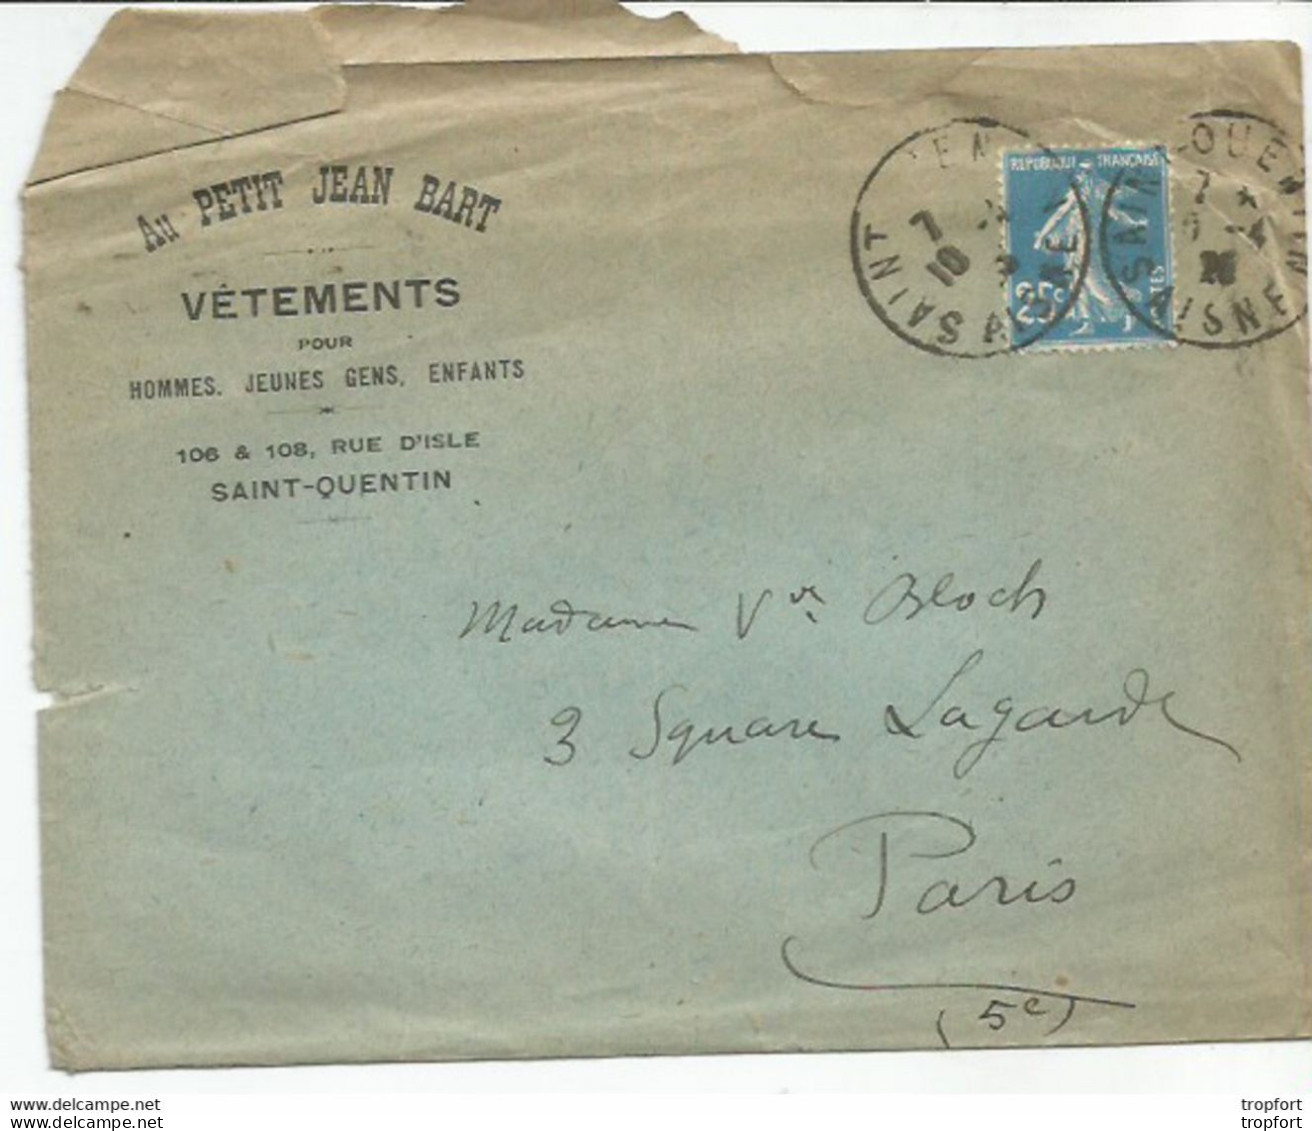 F12 / Enveloppe Publicitaire AU PETIT JEAN BART SAINT-QUENTIN Timbre Marianne 1926 - Publicités